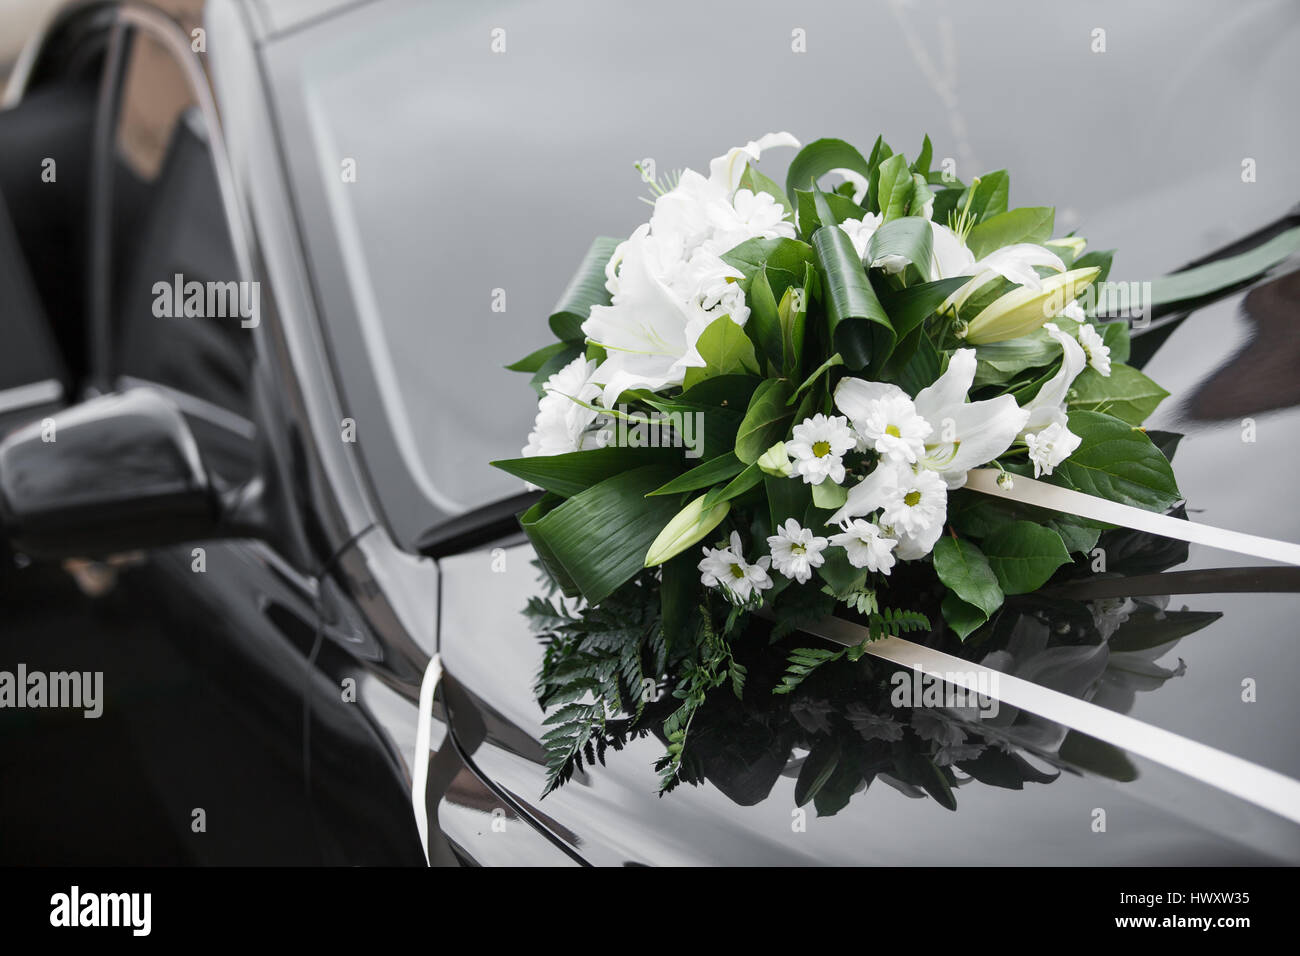 https://c8.alamy.com/compfr/hwxw35/decoration-de-voiture-bouquet-de-mariee-colore-jour-de-mariage-accessoires-hwxw35.jpg